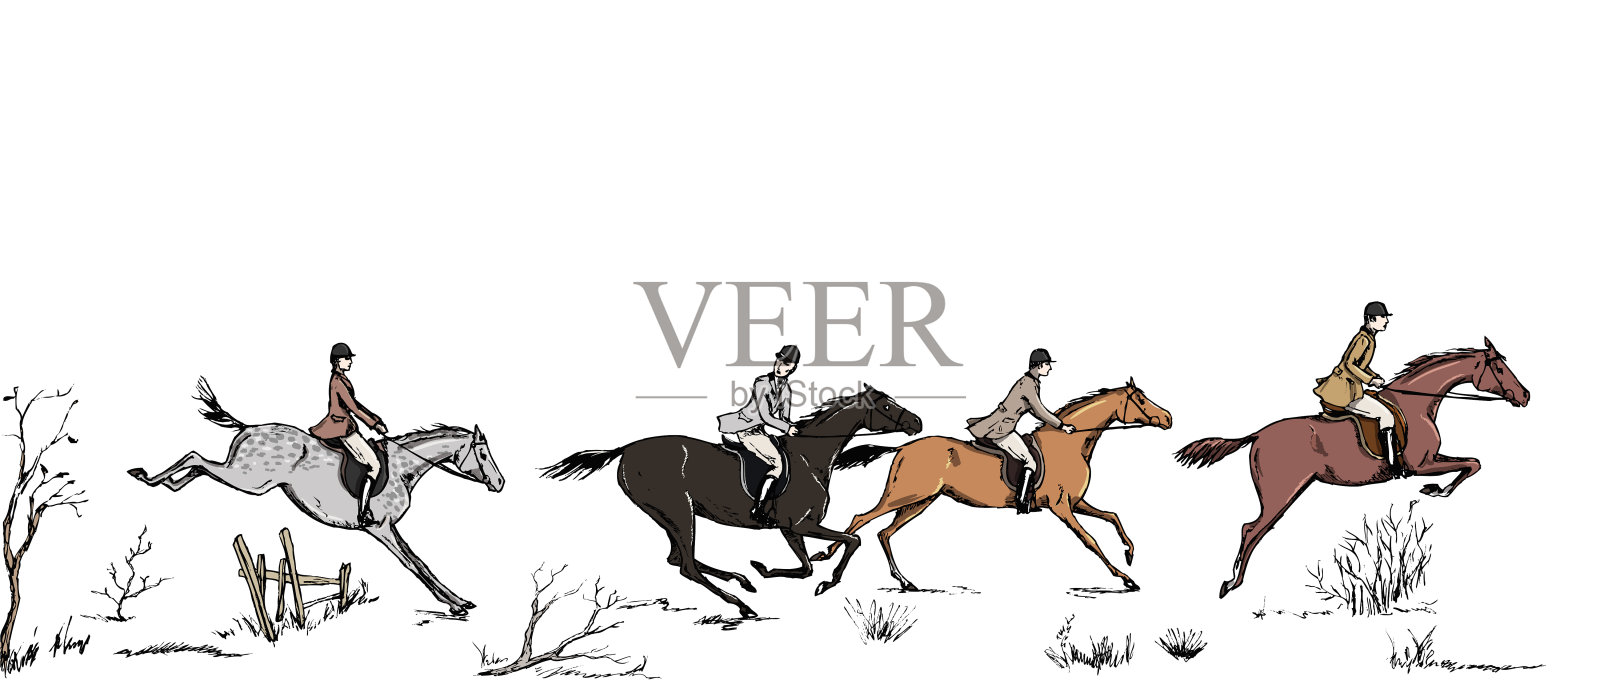 猎狐马术运动与骑手英式风格的景观。英国障碍赛马传统框架或边界。插画图片素材